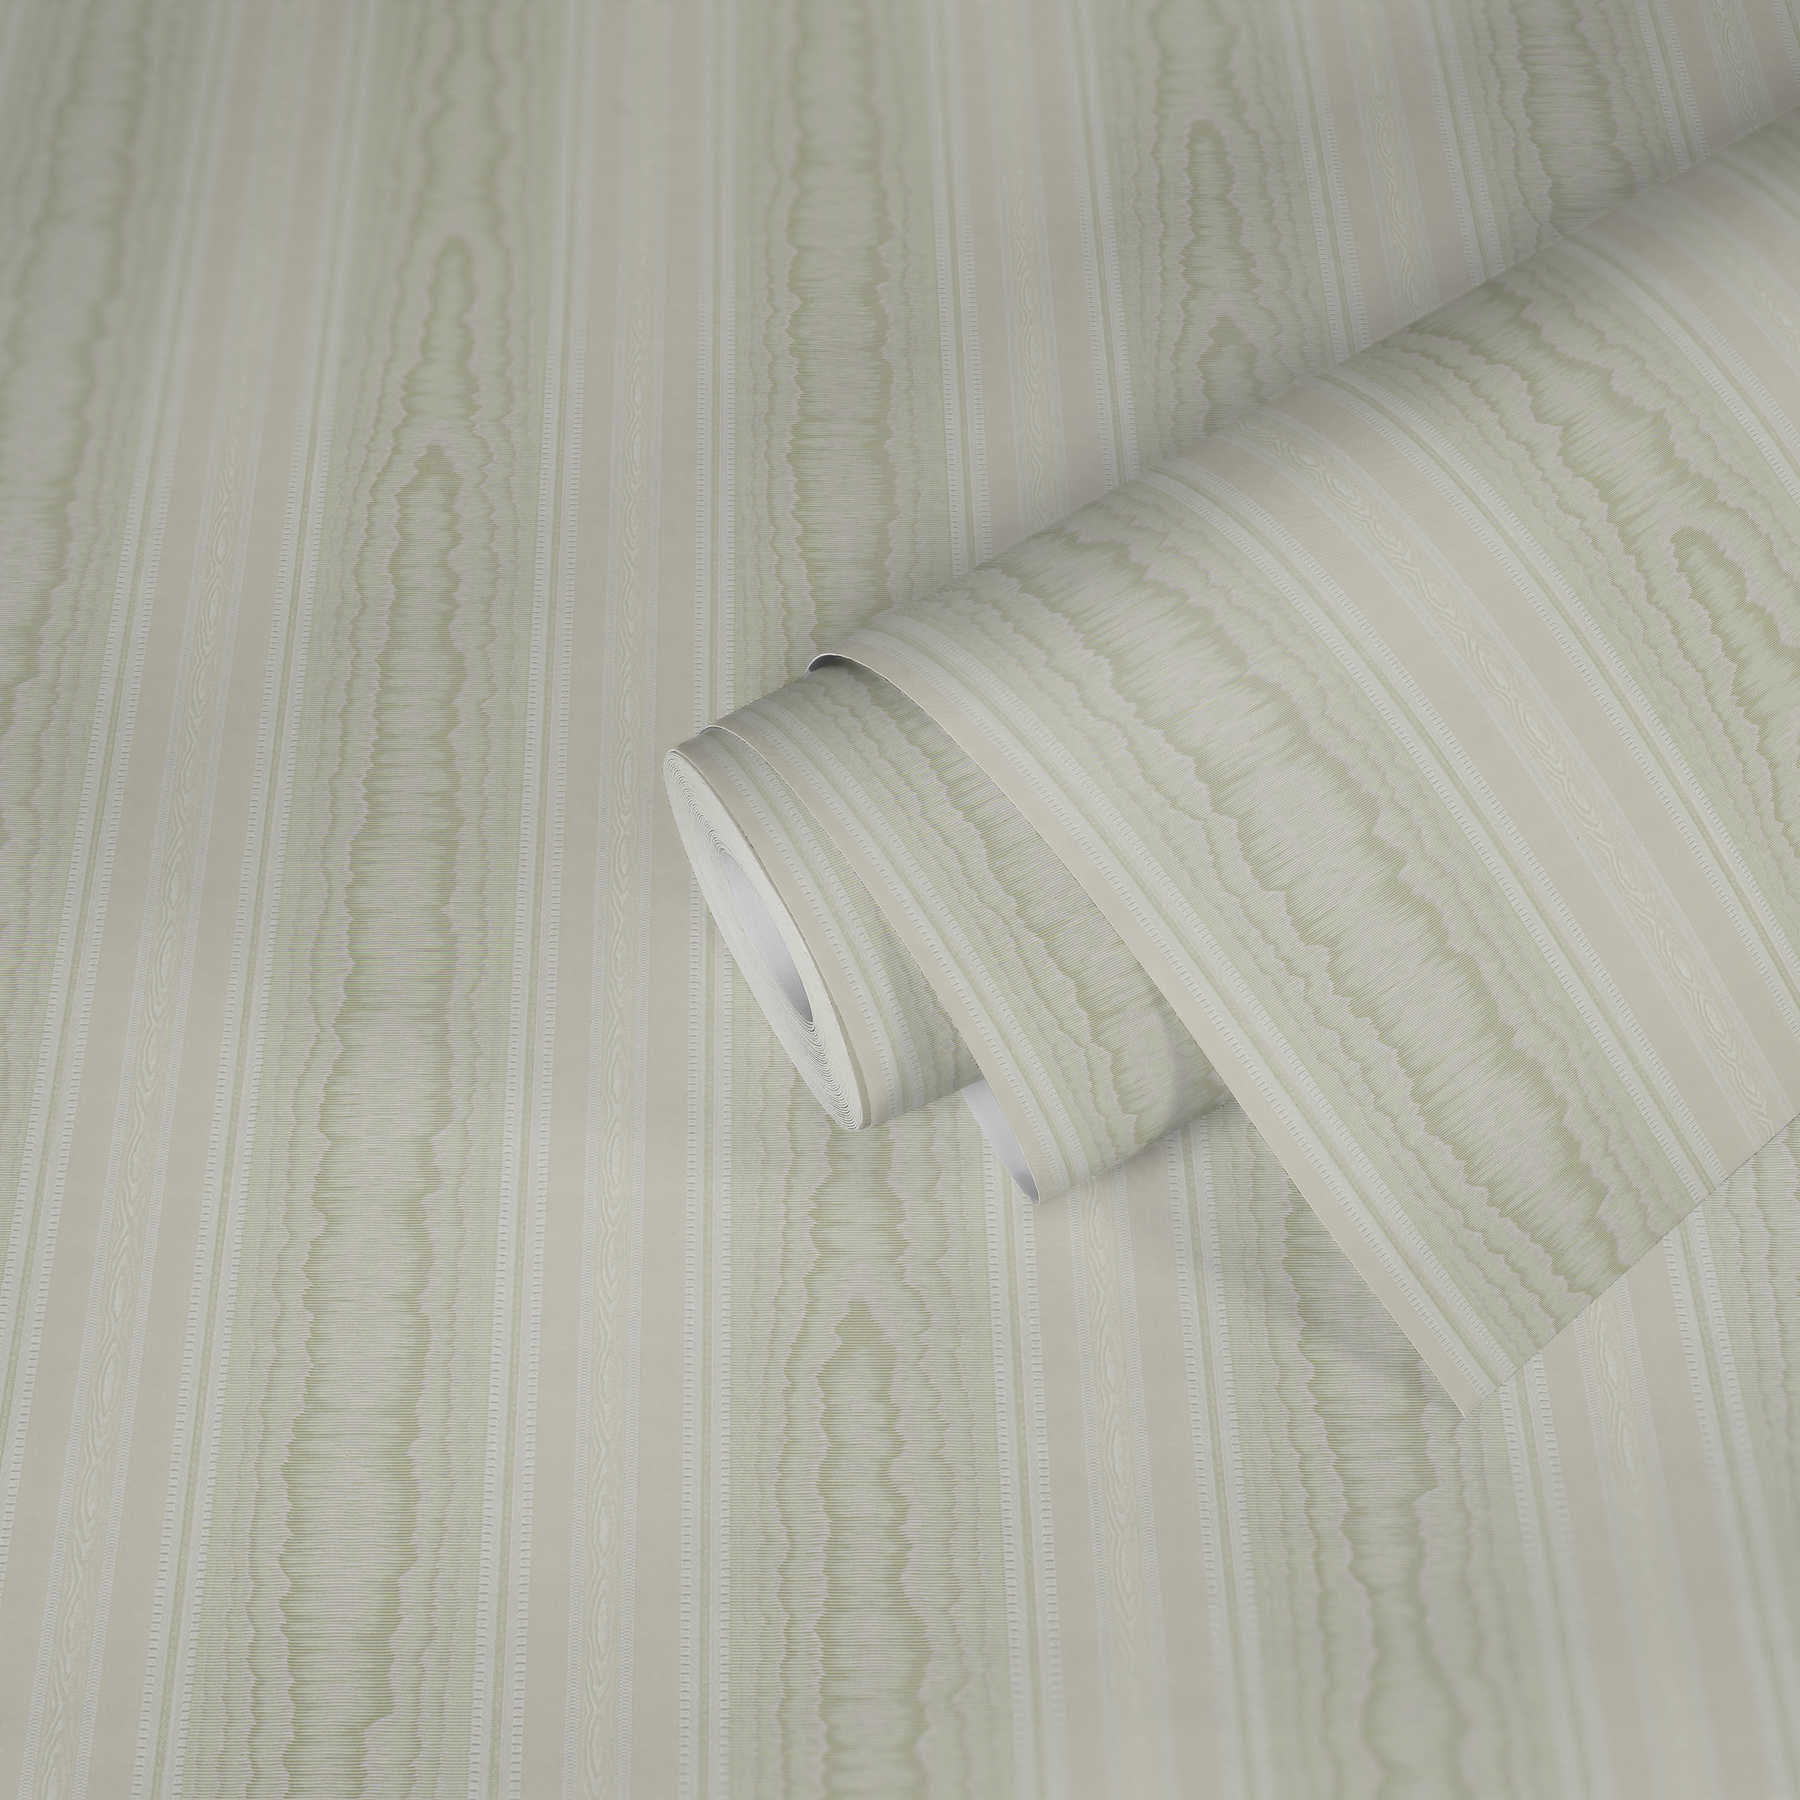             Luxus Streifen Tapete mit Moiré Design – Grün, Weiß
        